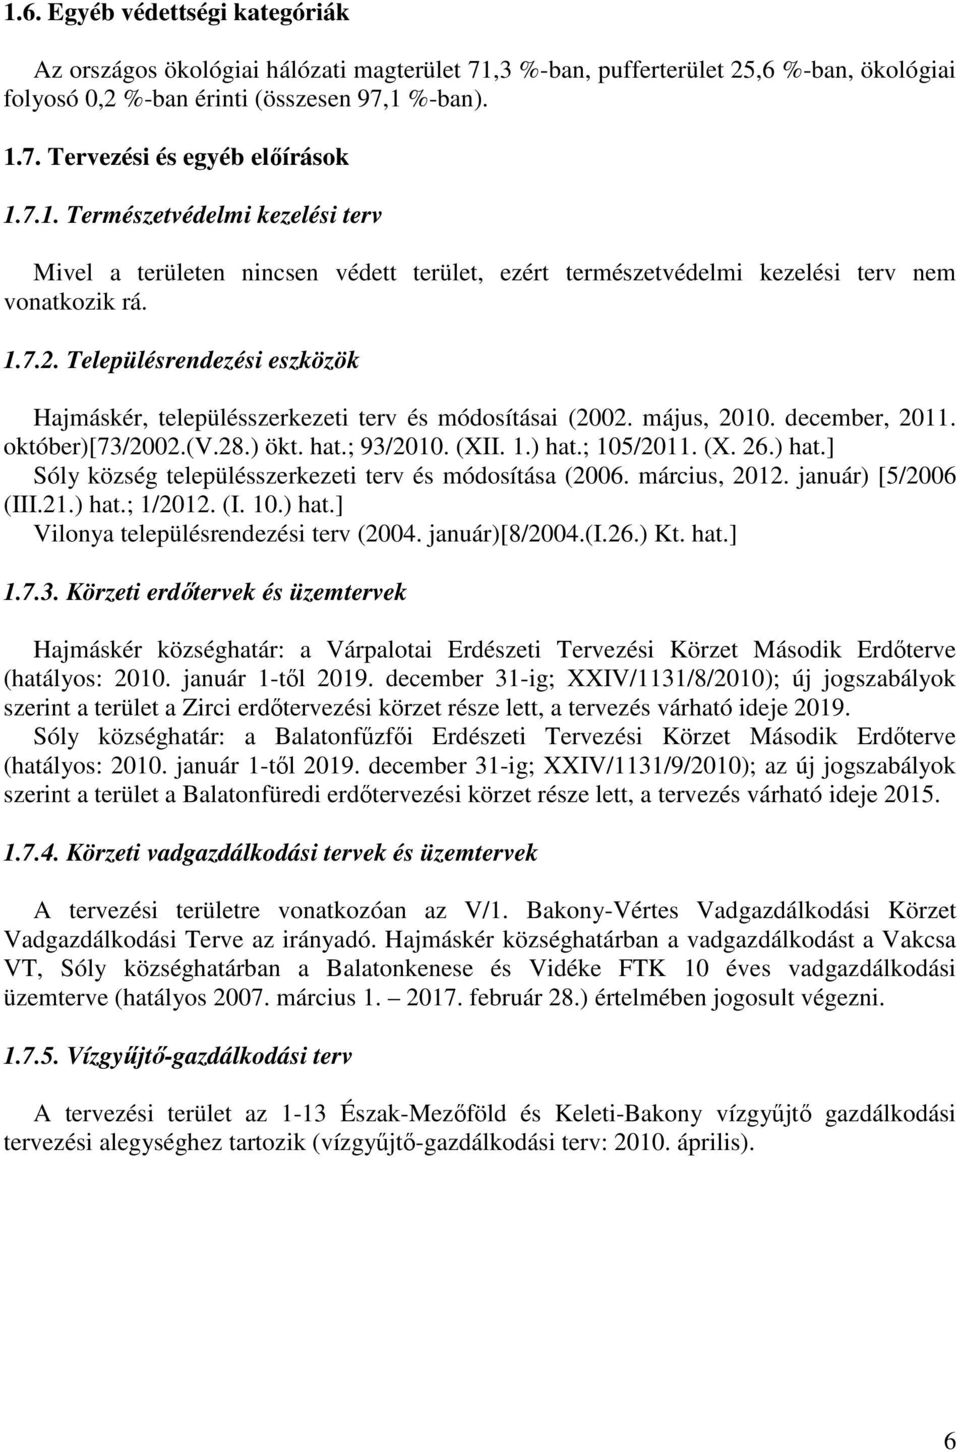 Településrendezési eszközök Hajmáskér, településszerkezeti terv és módosításai (2002. május, 2010. december, 2011. október)[73/2002.(v.28.) ökt. hat.; 93/2010. (XII. 1.) hat.